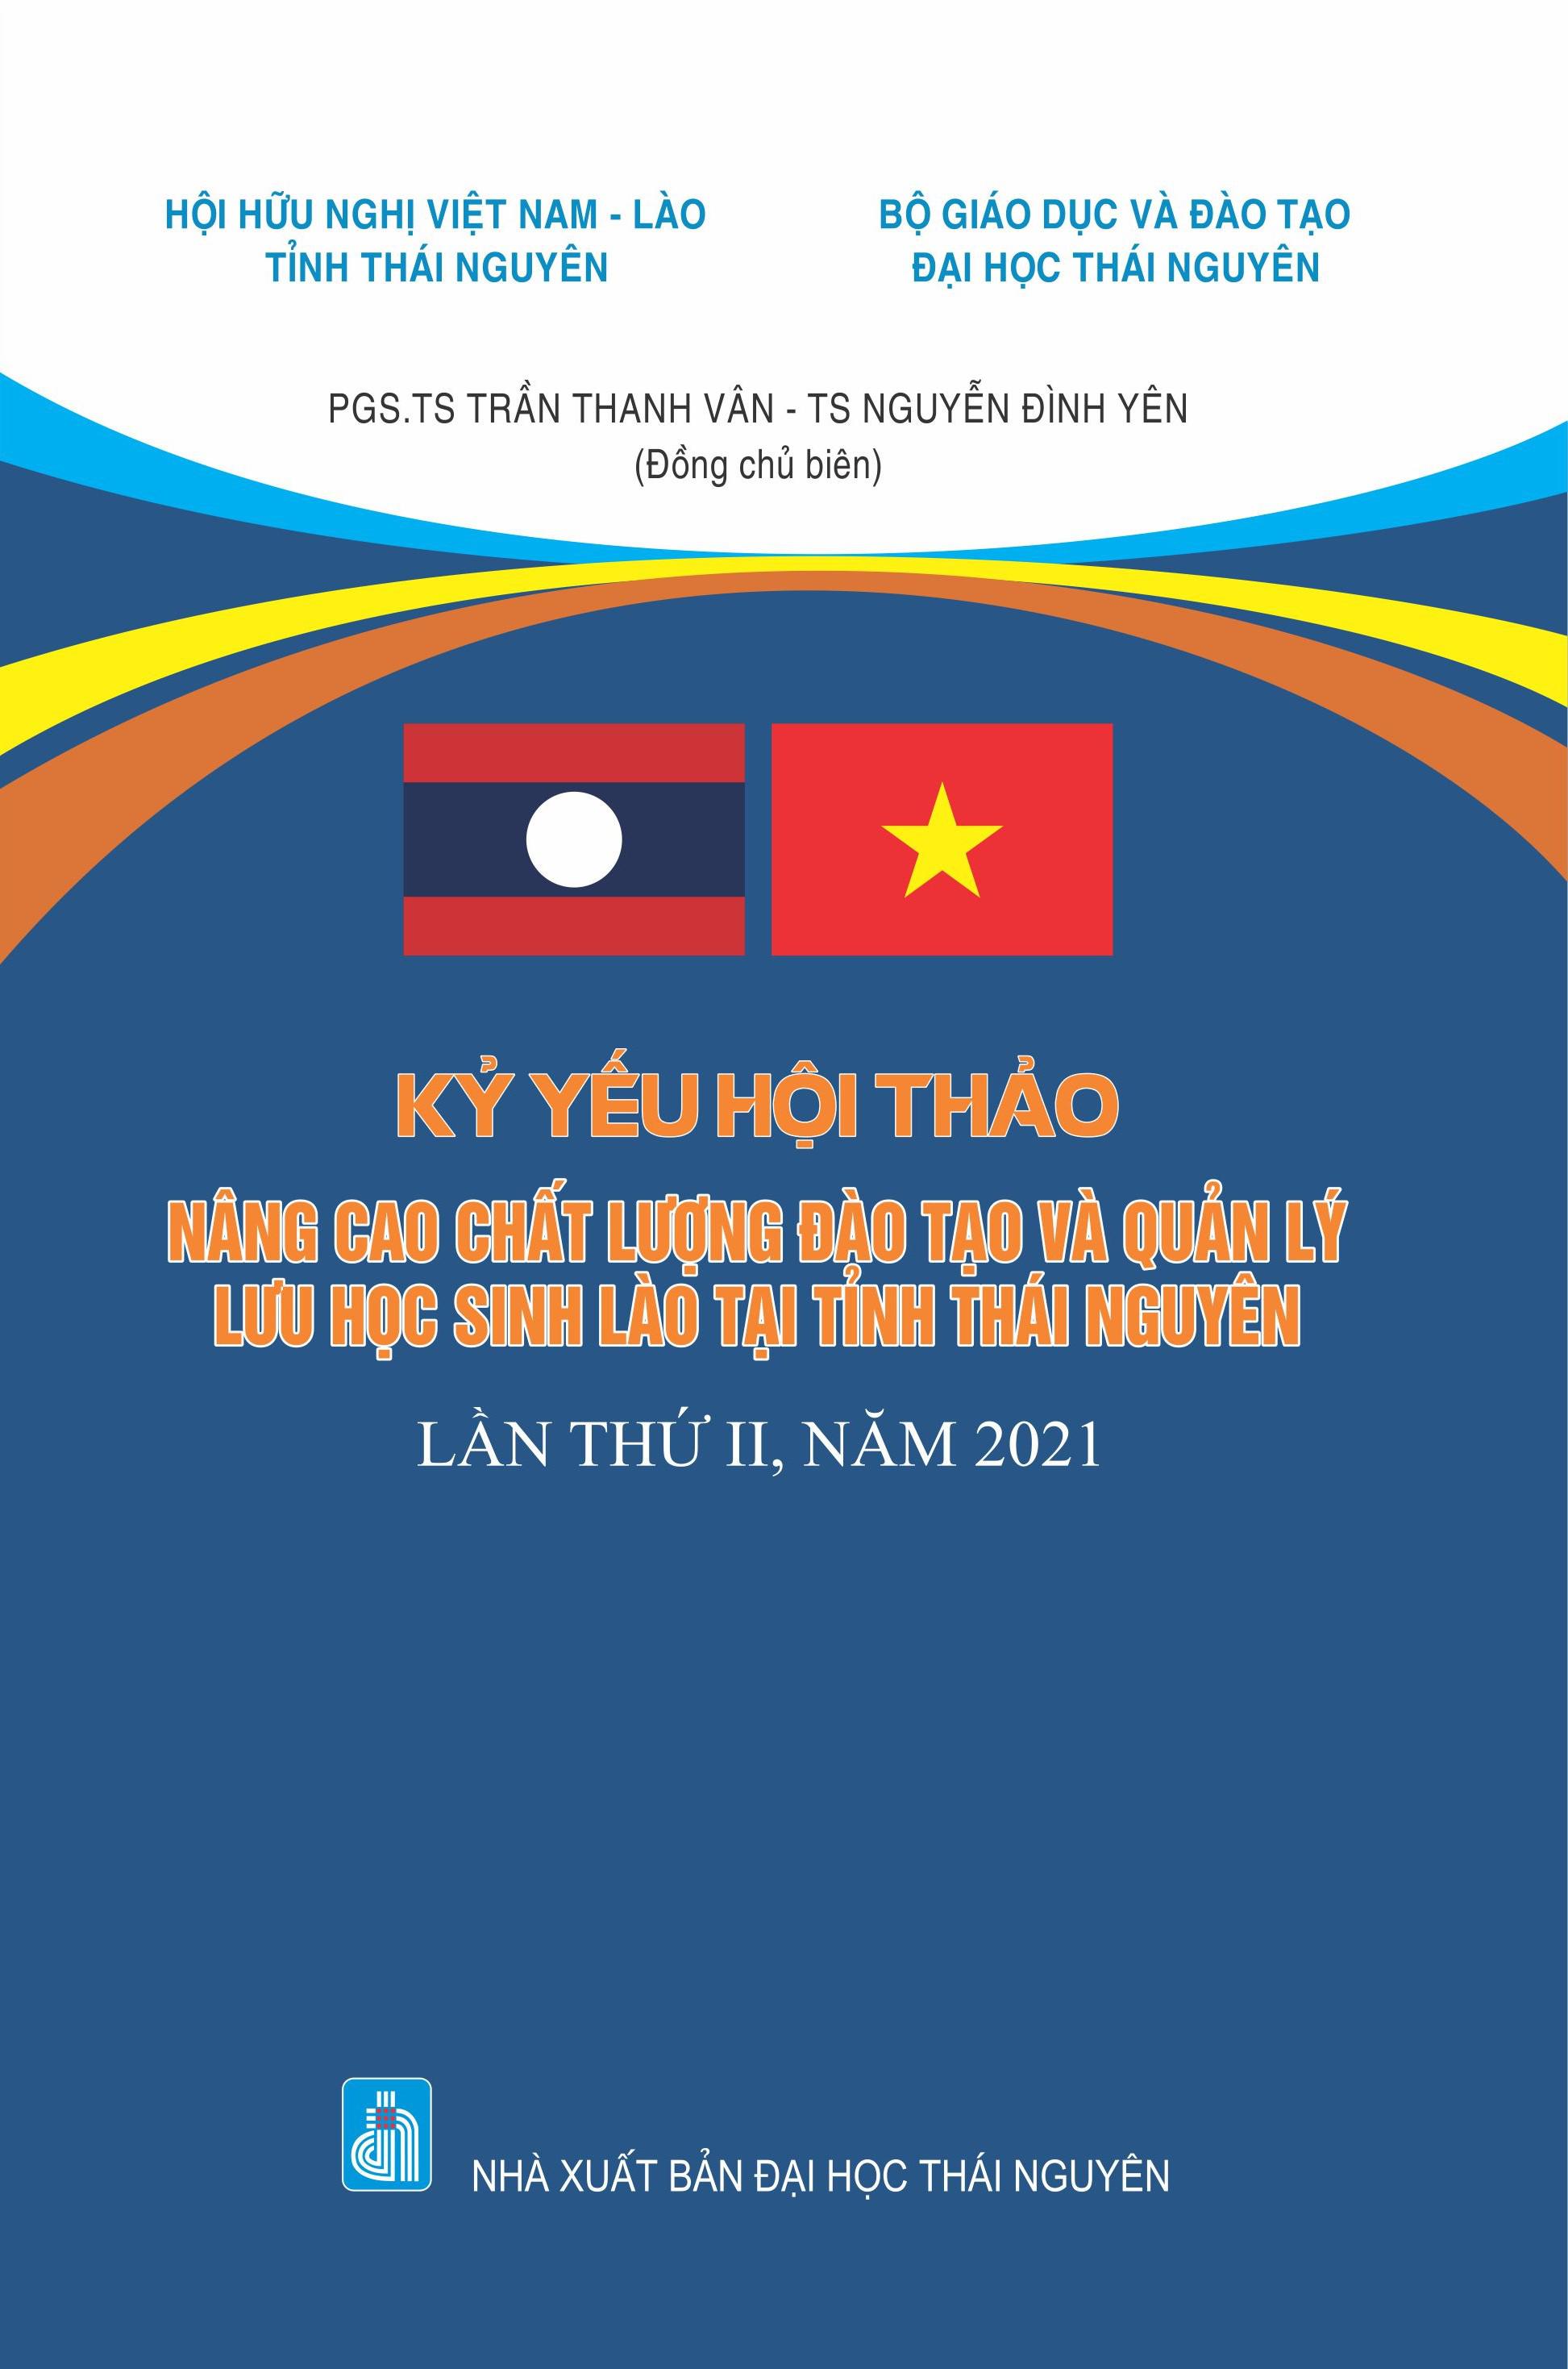 Kỷ yếu Hội thảo nâng cao chất lượng đào tạo và quản lý Lưu học sinh Lào tại tỉnh Thái Nguyên, lần thứ II, năm 2021